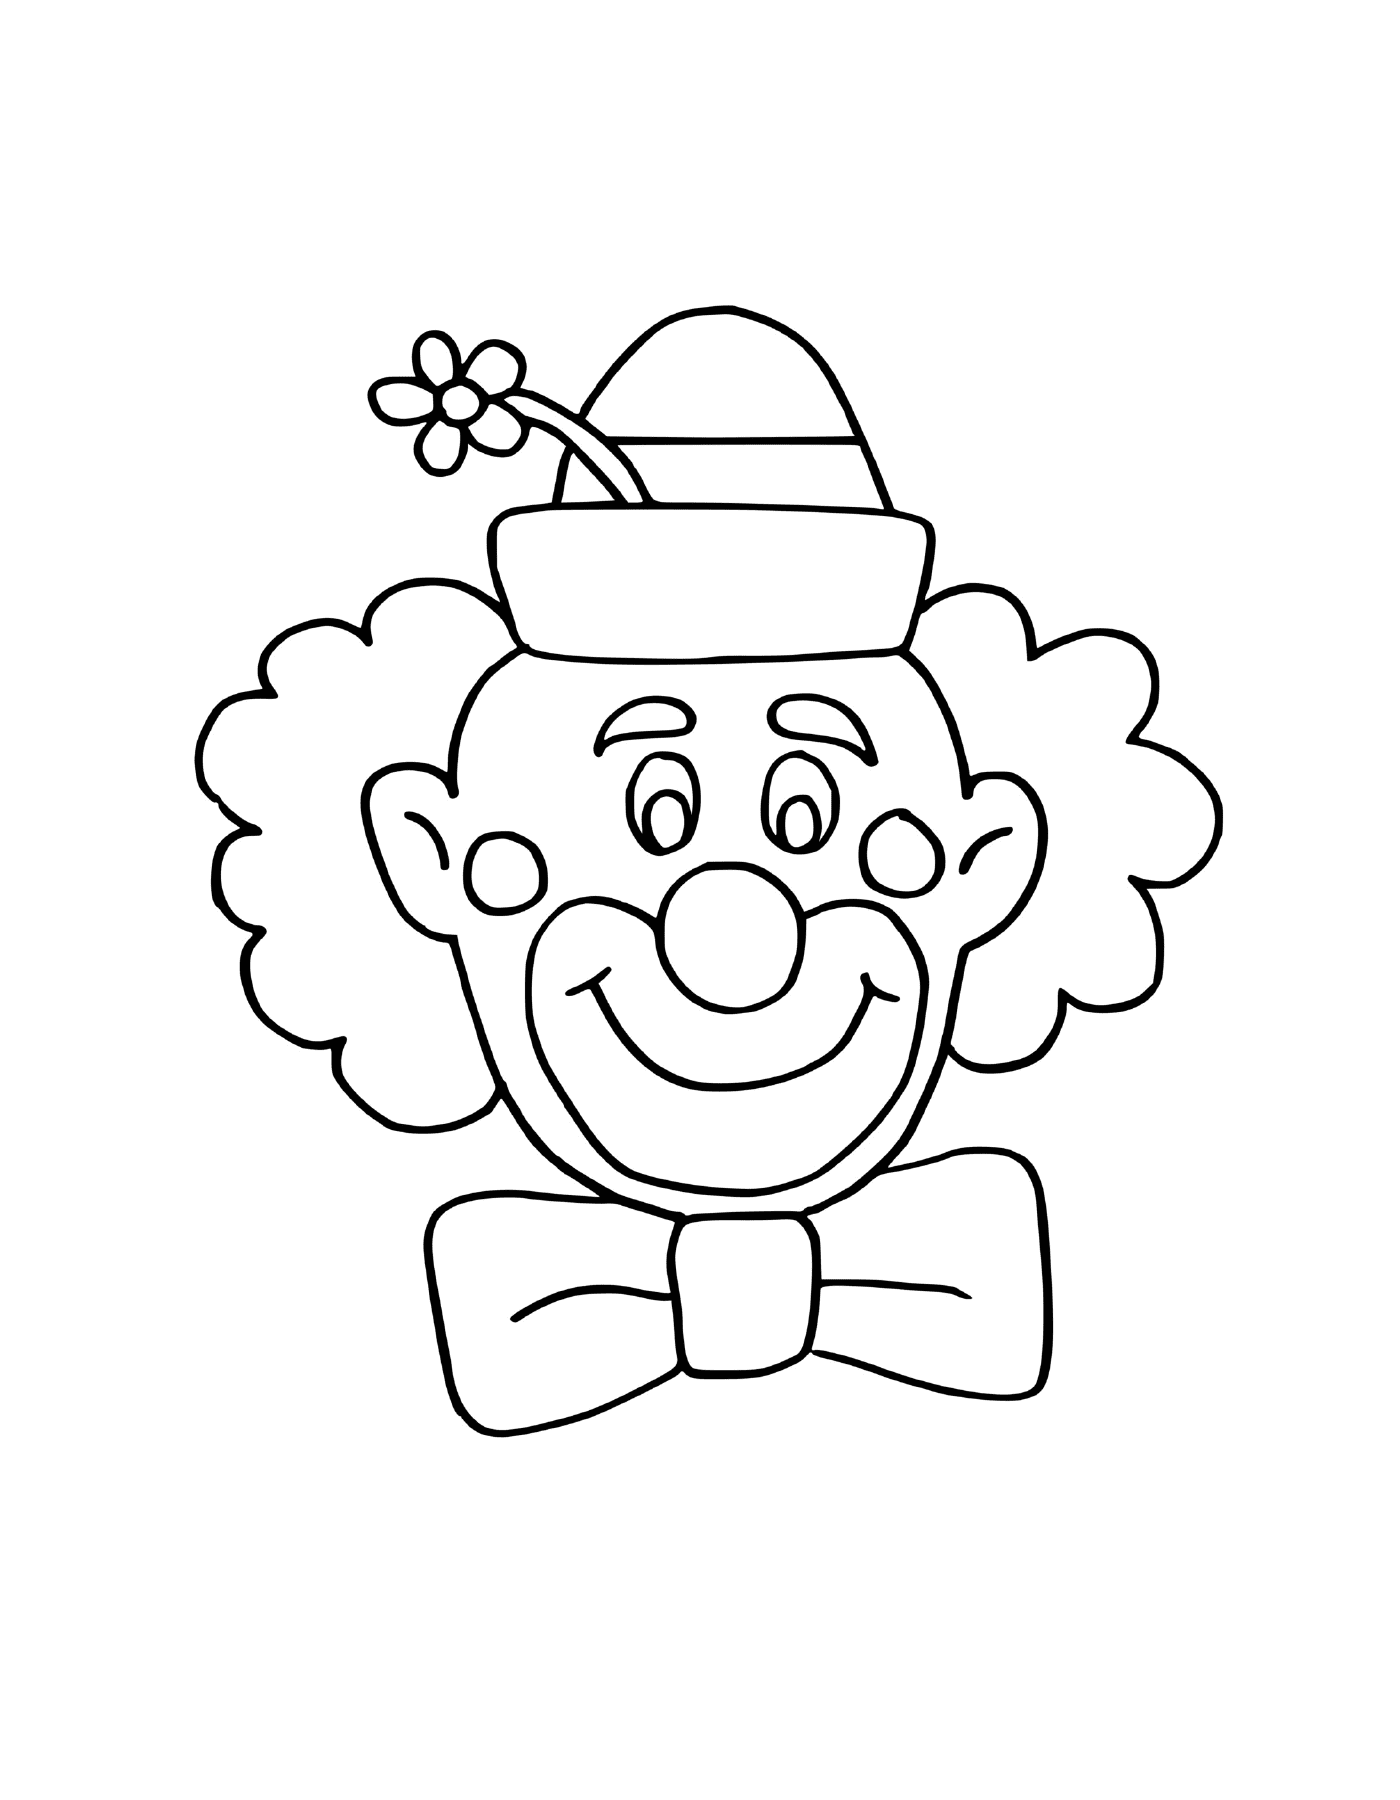  Клоун улыбается и веселится в цветочной шляпе 